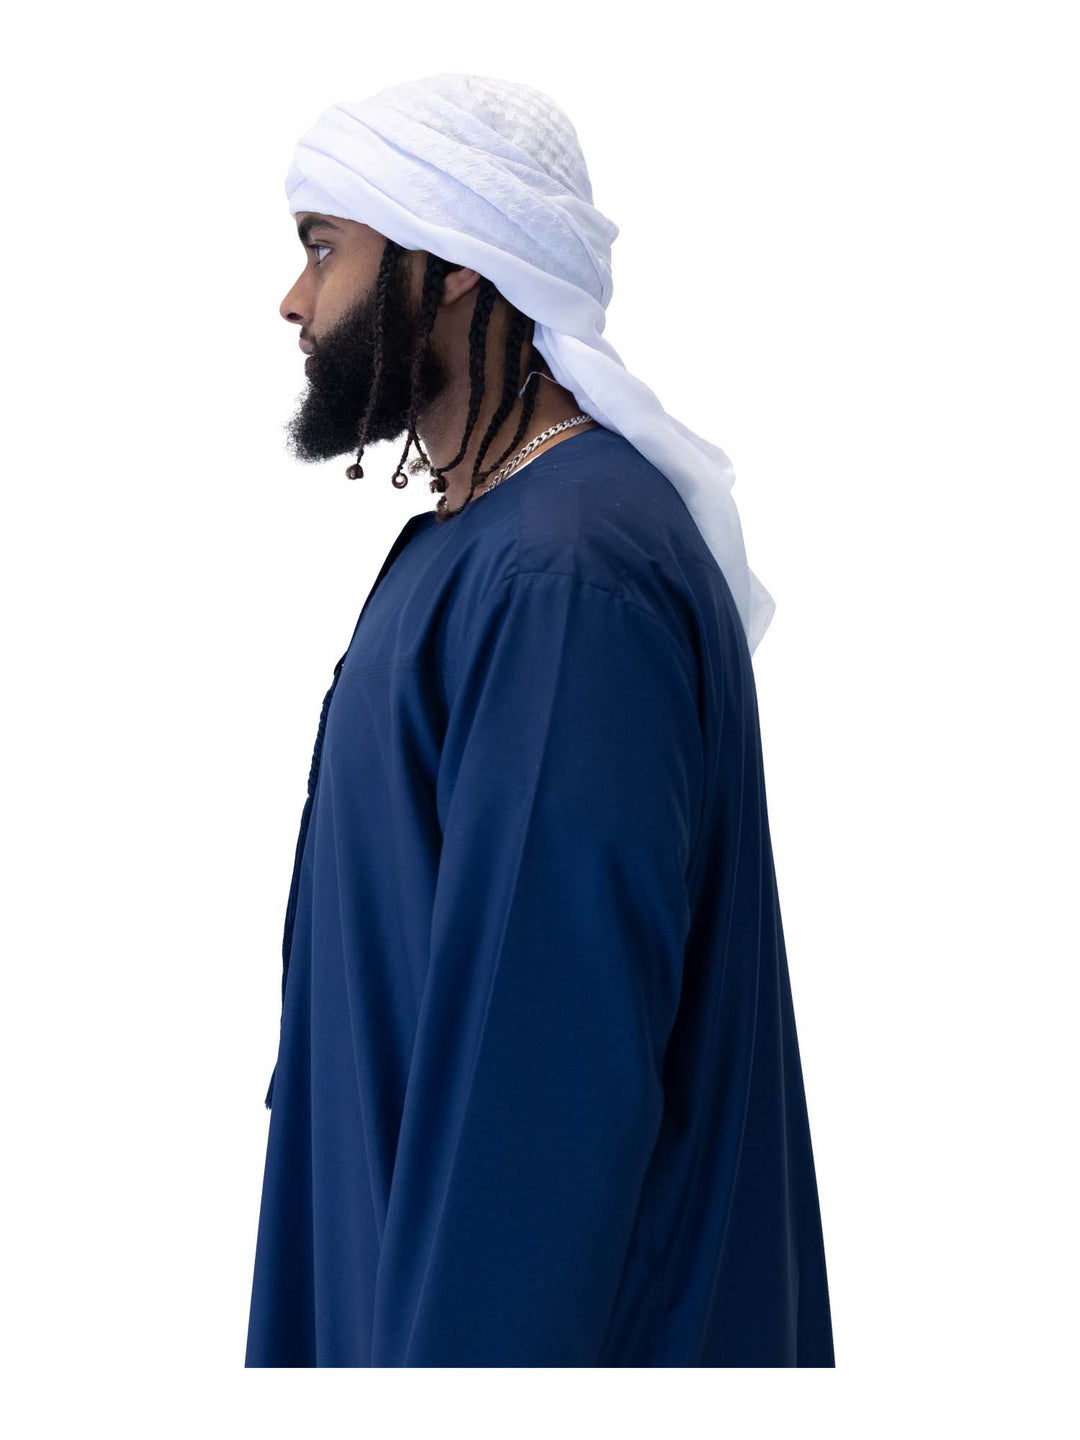 انطباعات إسلامية - وشاح رجالي على الطراز العربي - أبيض